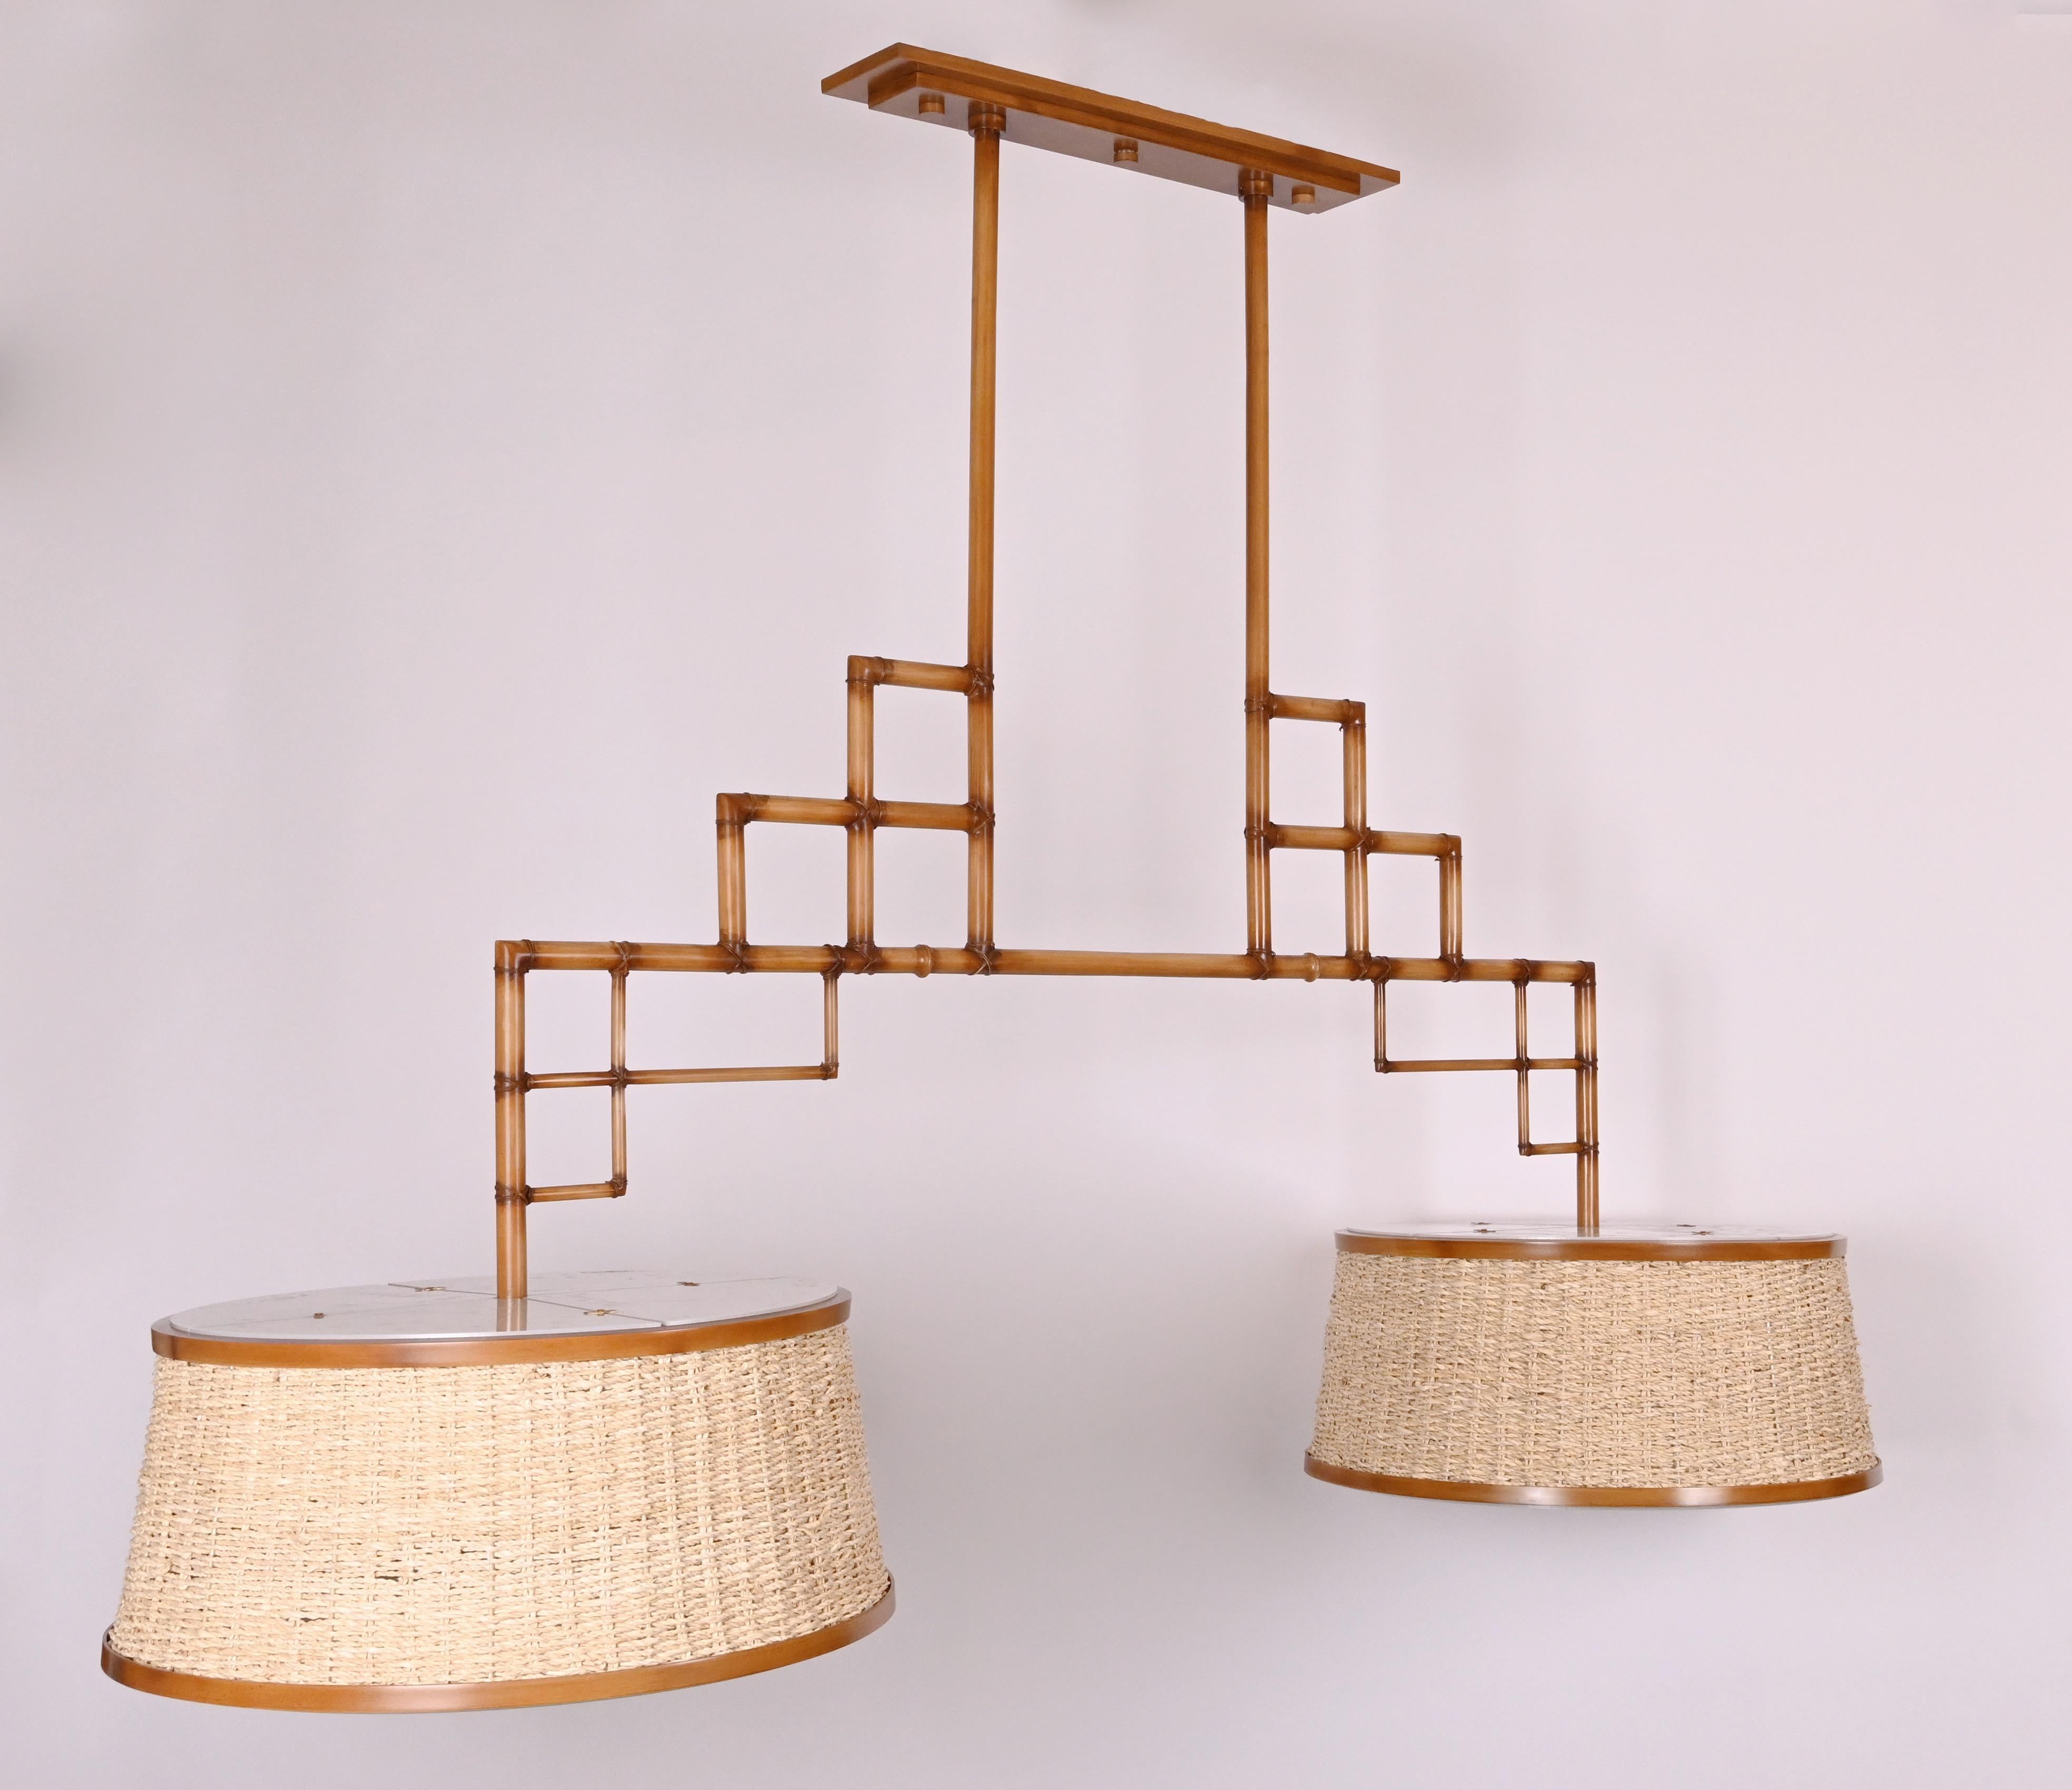 David Duncan Studio Bamboo Billiard Fixture, bestehend aus einem geometrischen Rahmen, der aus kreuzweise angeordneten Abschnitten aus handbemaltem Bambusimitat aus Messing besteht, mit zwei Lichtquellen aus Weidenschirmen, die insgesamt acht